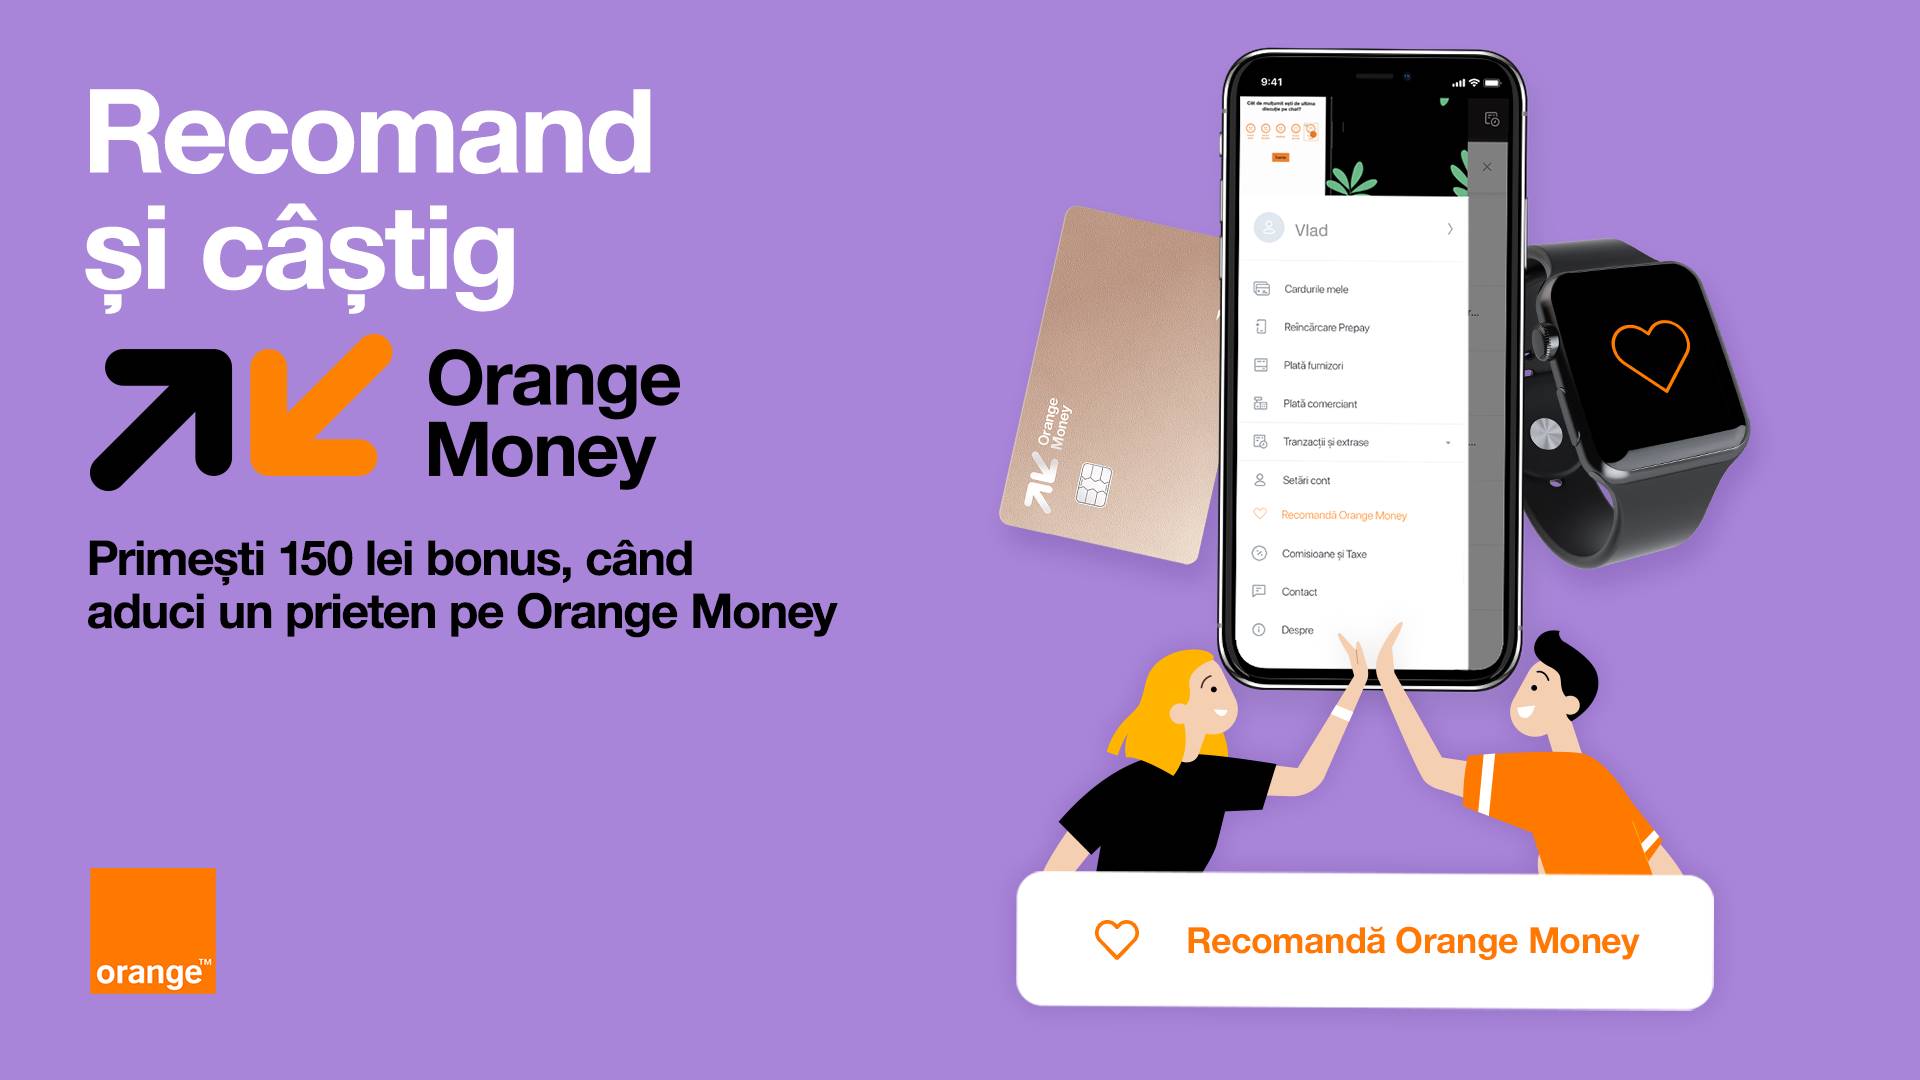 Oranges officiella meddelande, hur mycket pengar ger det GRATIS hänvisningar till rumänska kunder